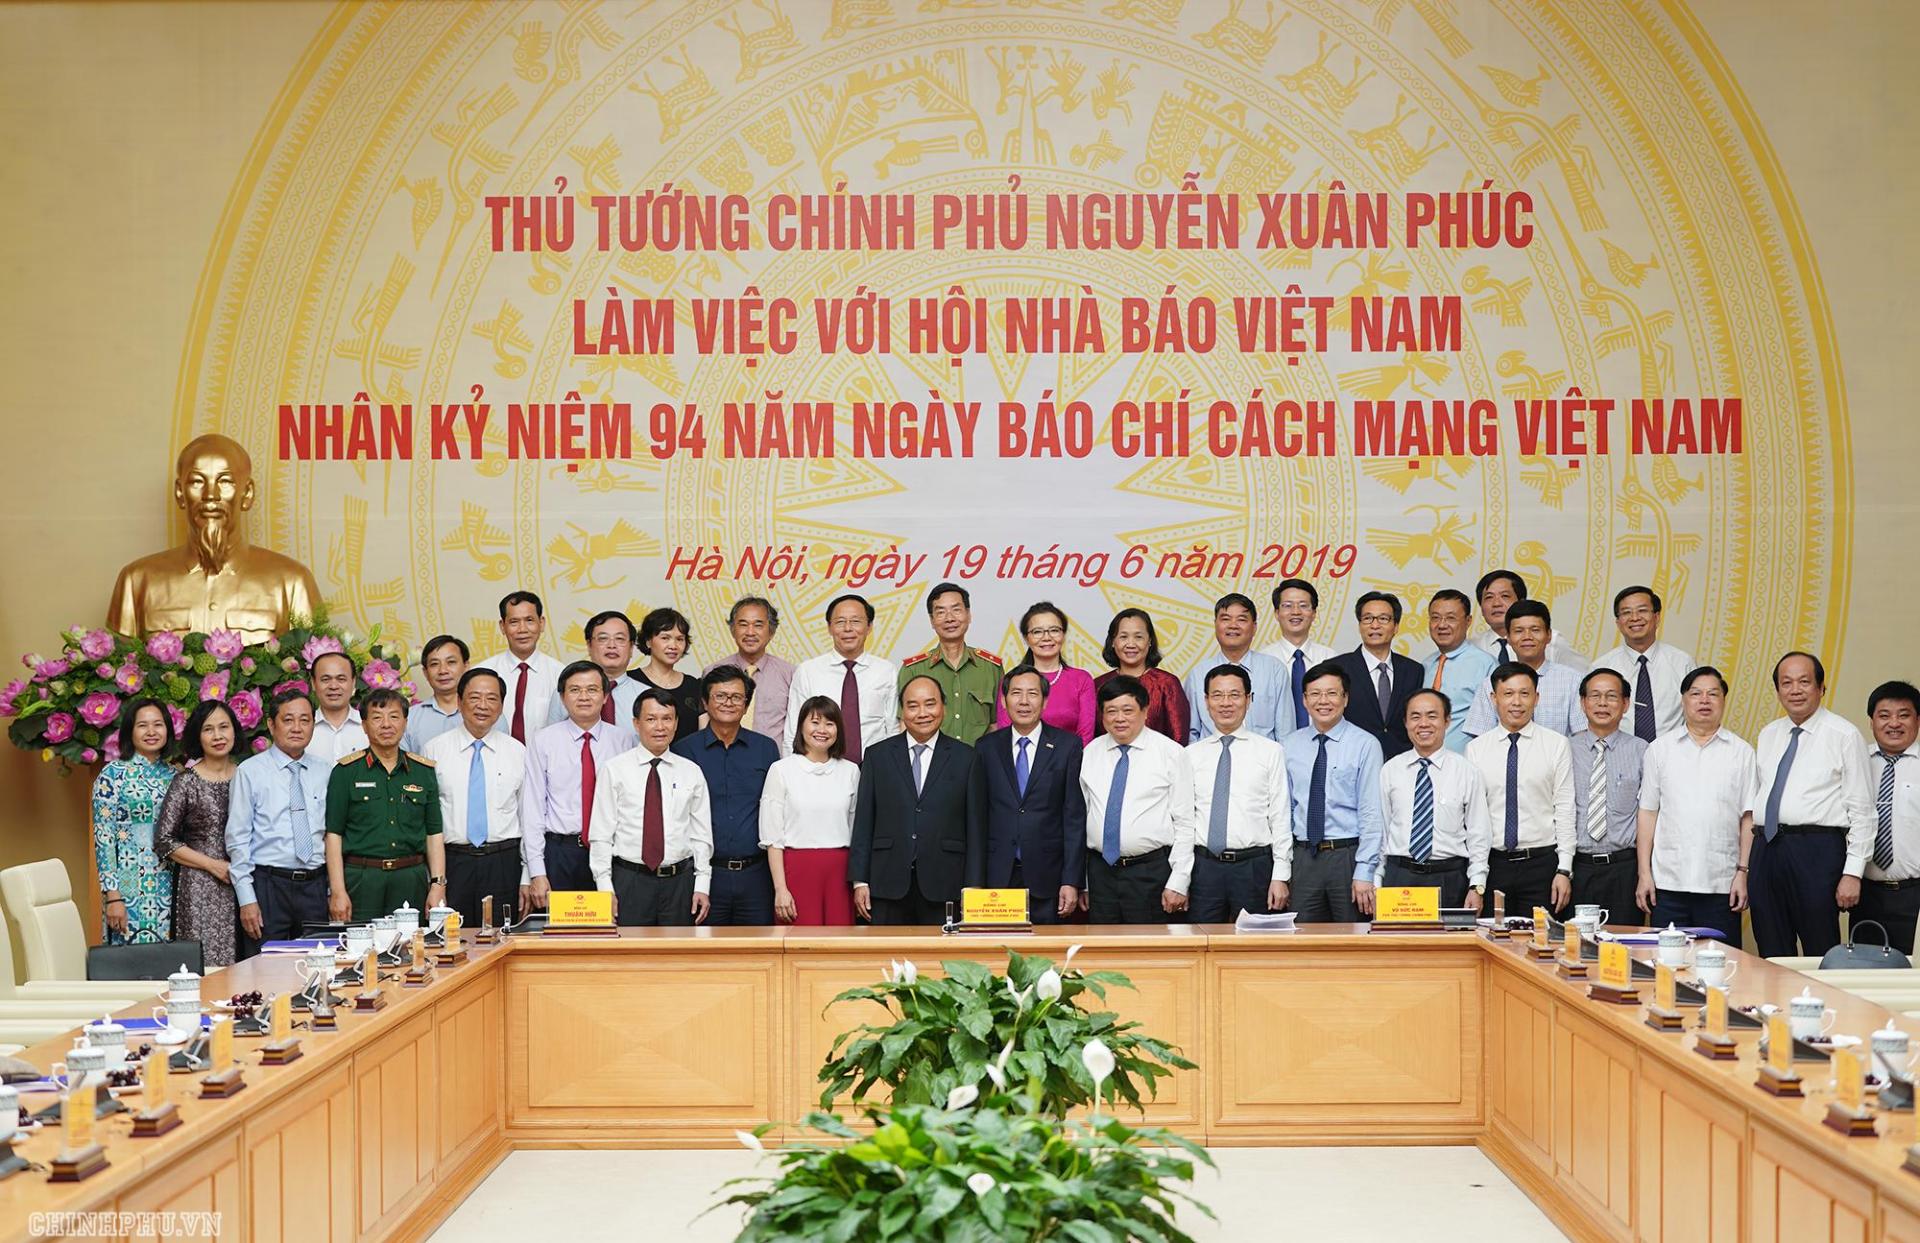  Thủ tướng Nguyễn Xuân Phúc và các đại biểu.